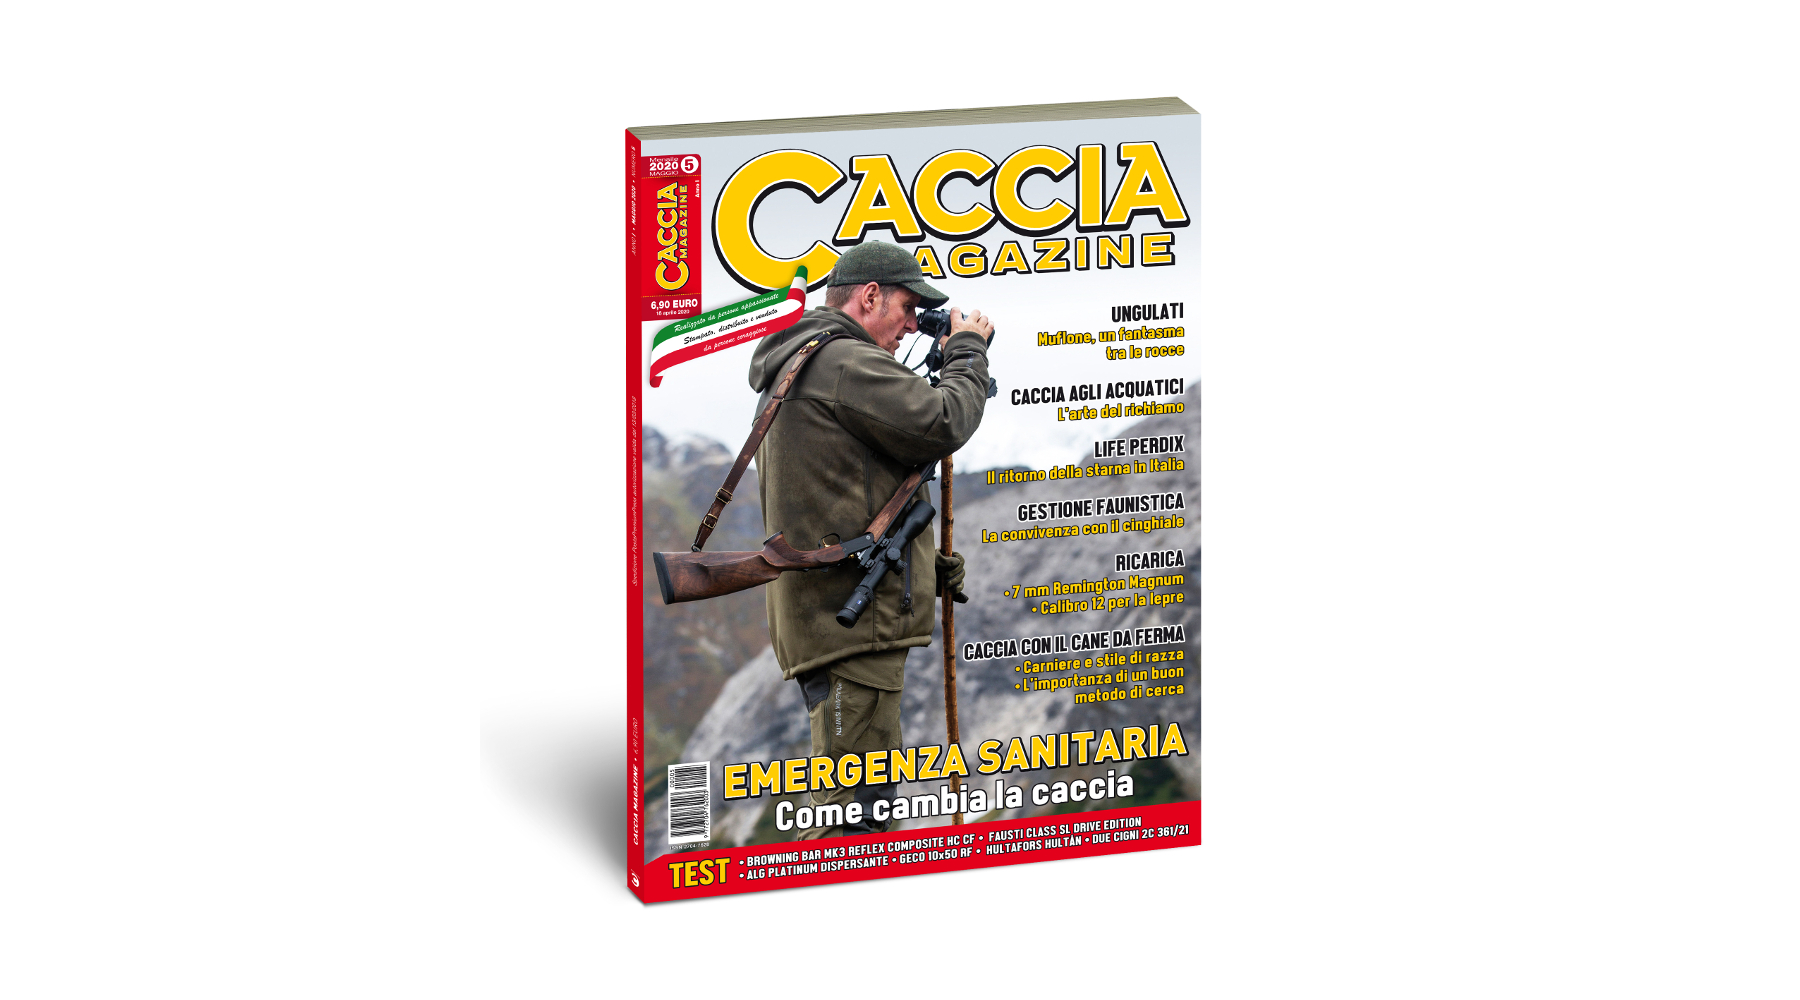 Caccia Magazine maggio 2020 in edicola dal 18 aprile